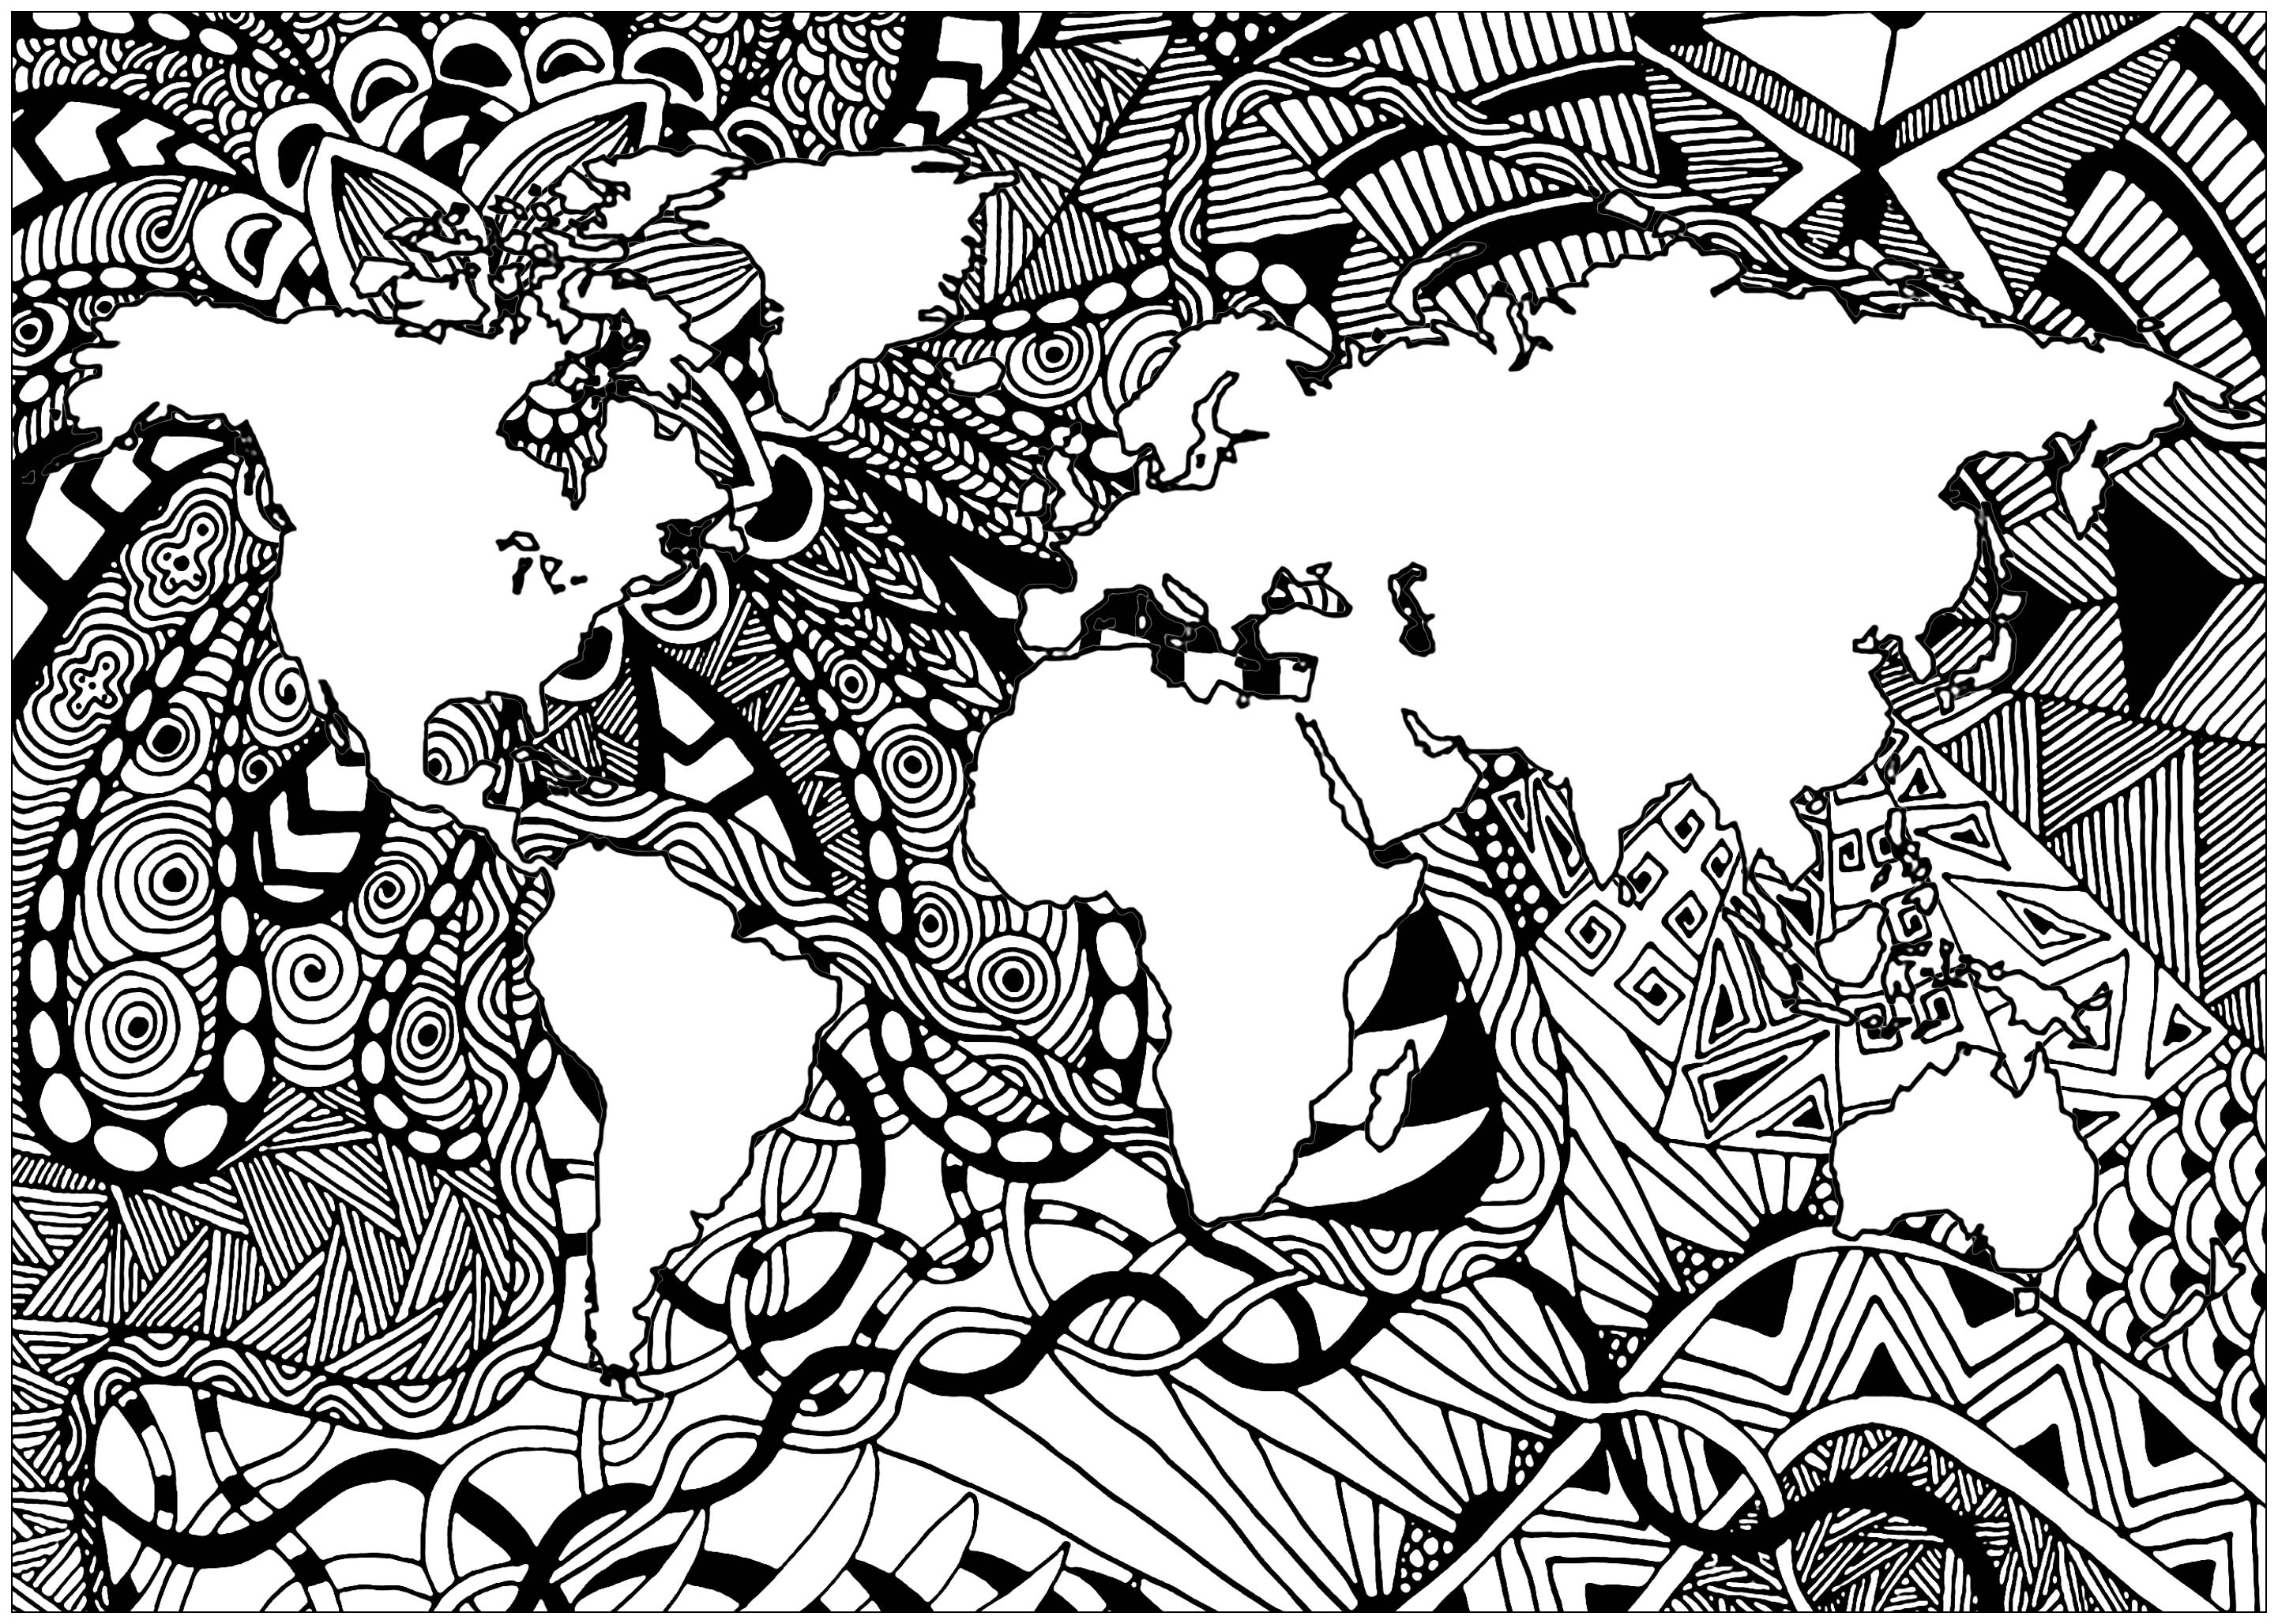 La Terre et des motifs Zentangle complexes (dans les mers)